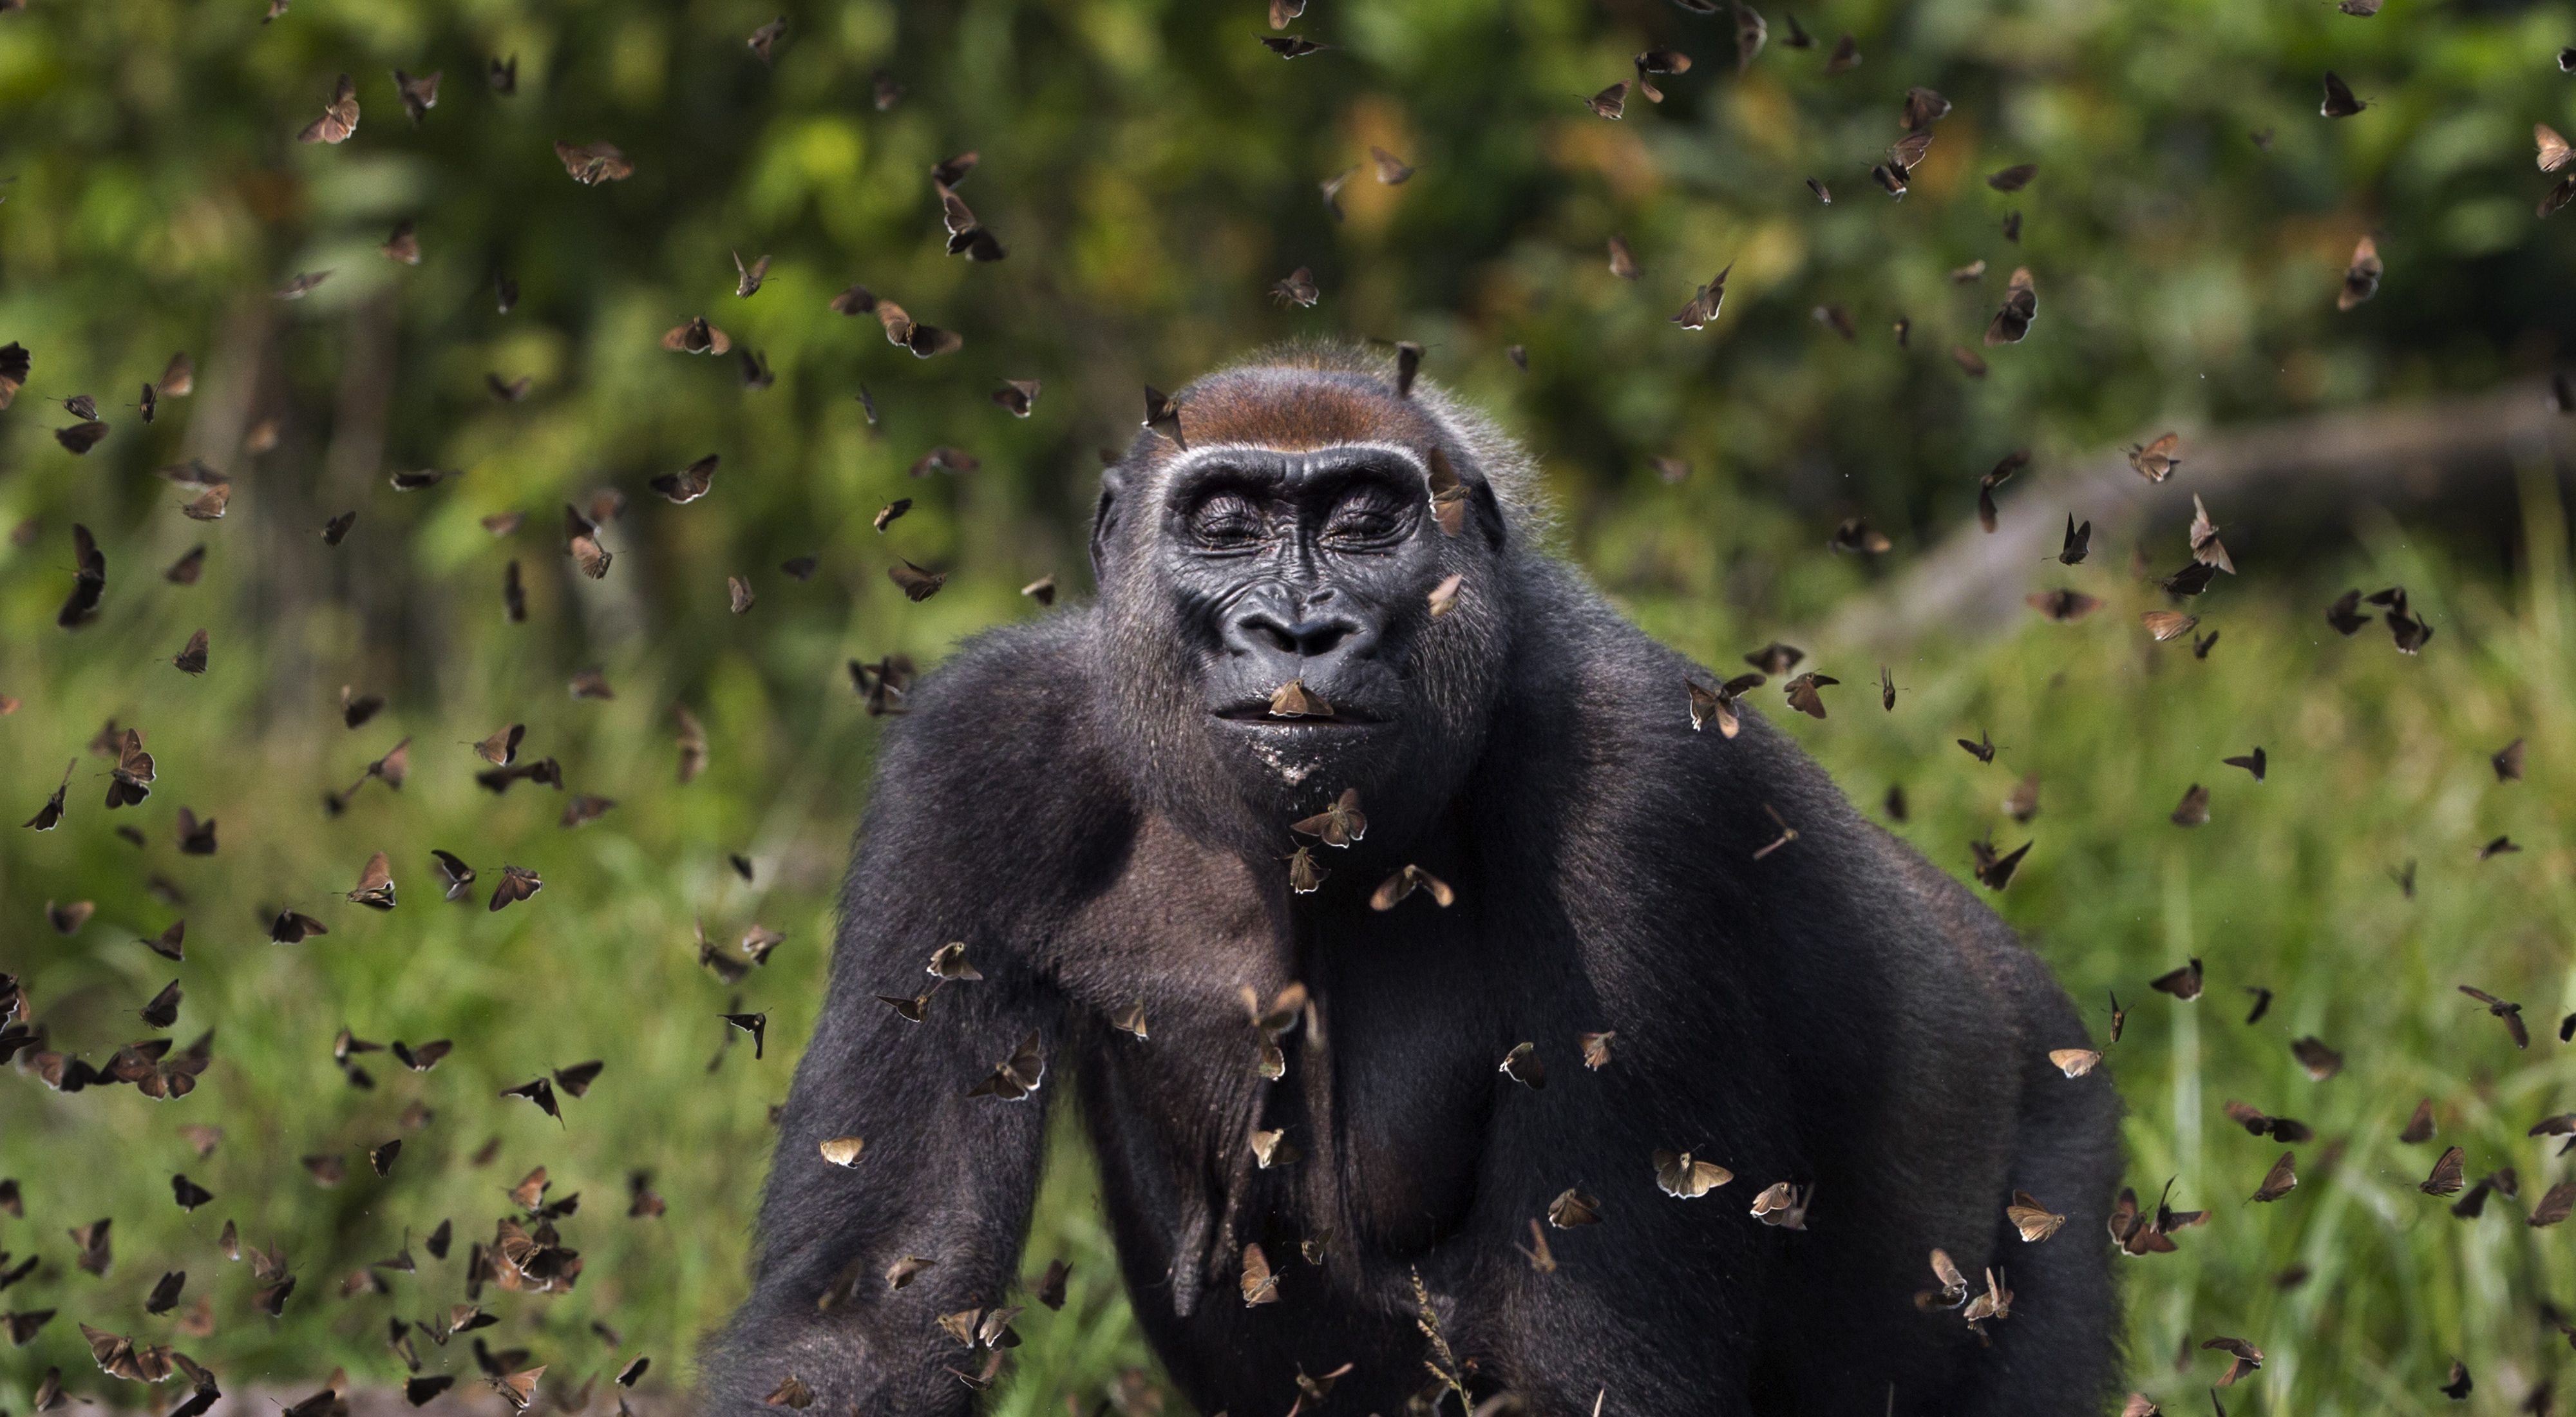 A fêmea de gorila da plancie ocidental, Malui, anda por uma núvem de borboletas.